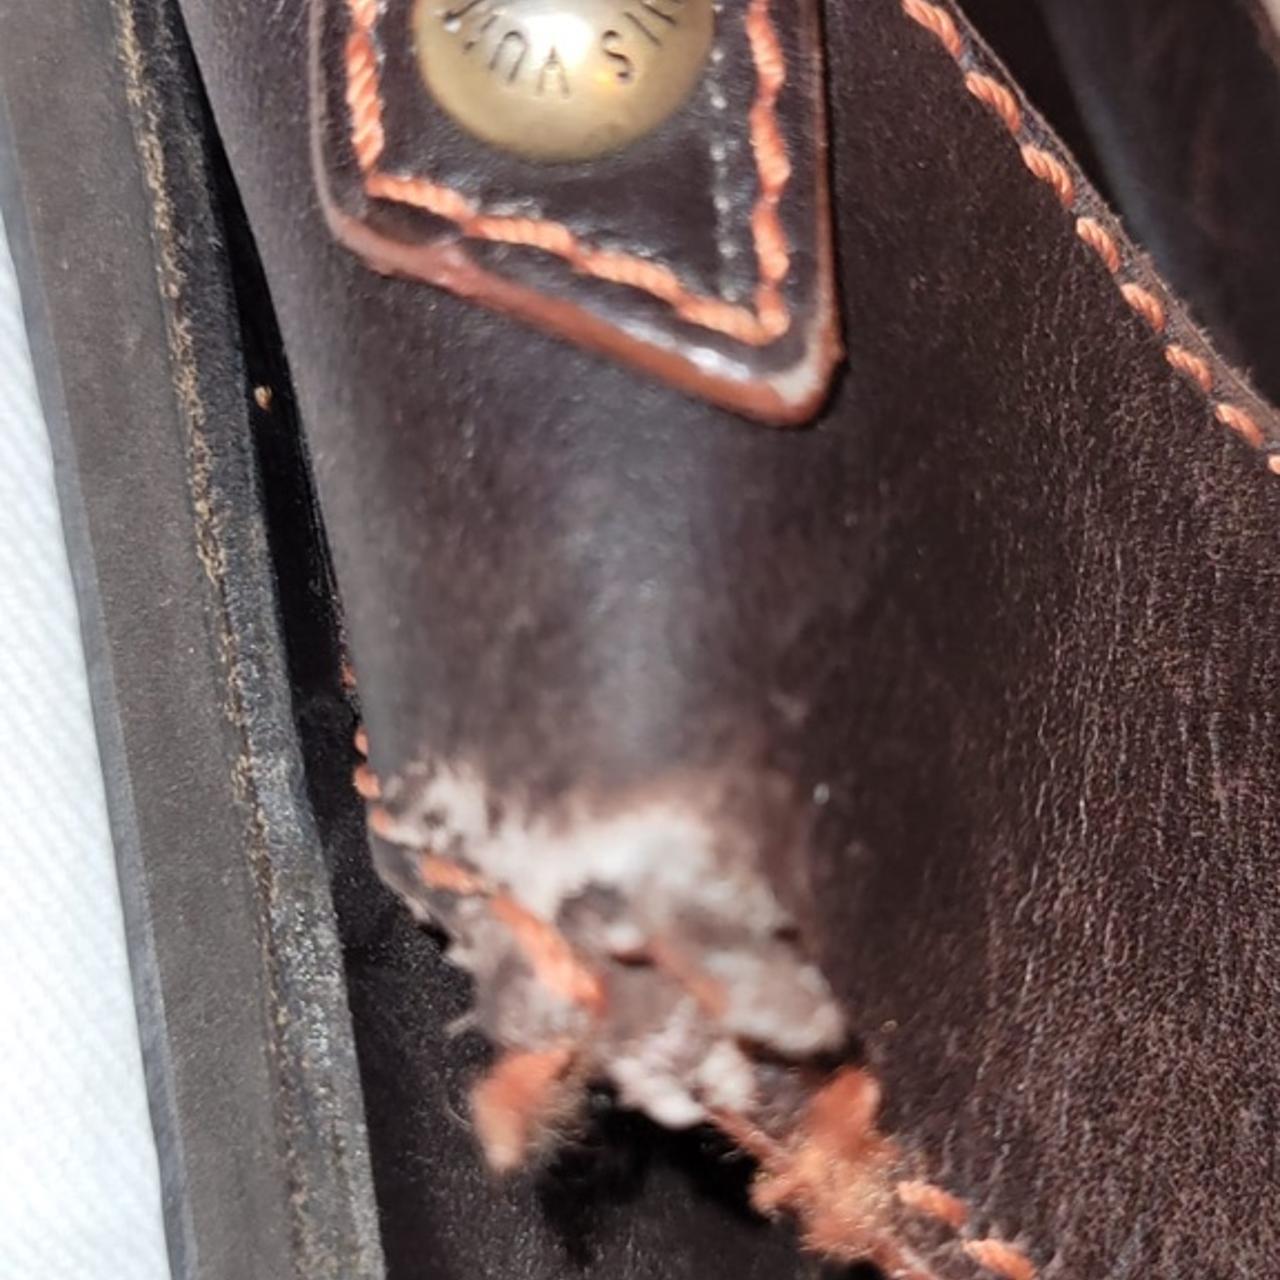 $995 Louis Vuitton Men's Brown Leather Sandals Sz LV 8 US 9  AUTHENTIC😍